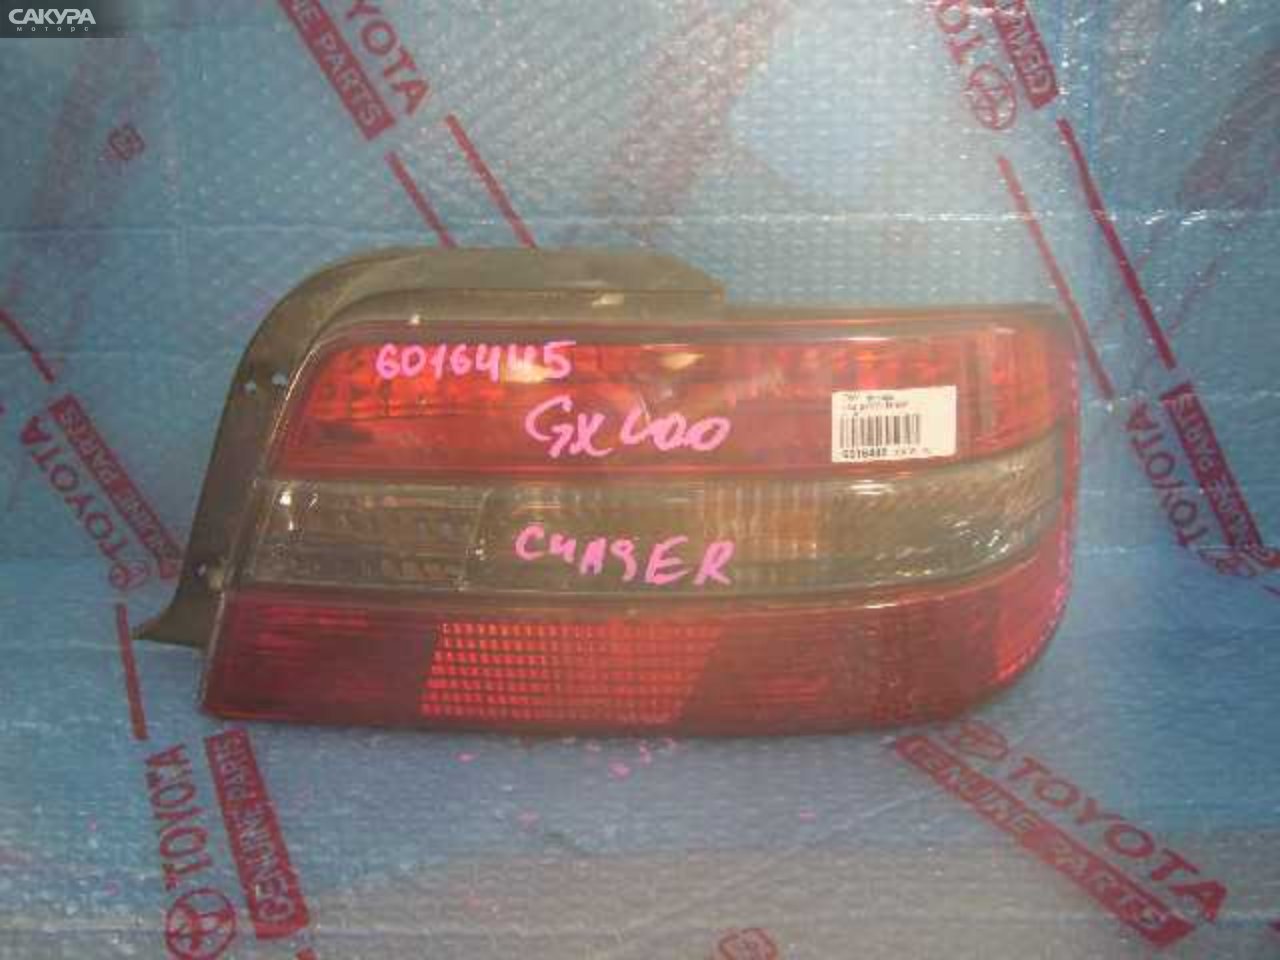 Фонарь стоп-сигнала правый Toyota Chaser GX100 22-268: купить в Сакура Кемерово.